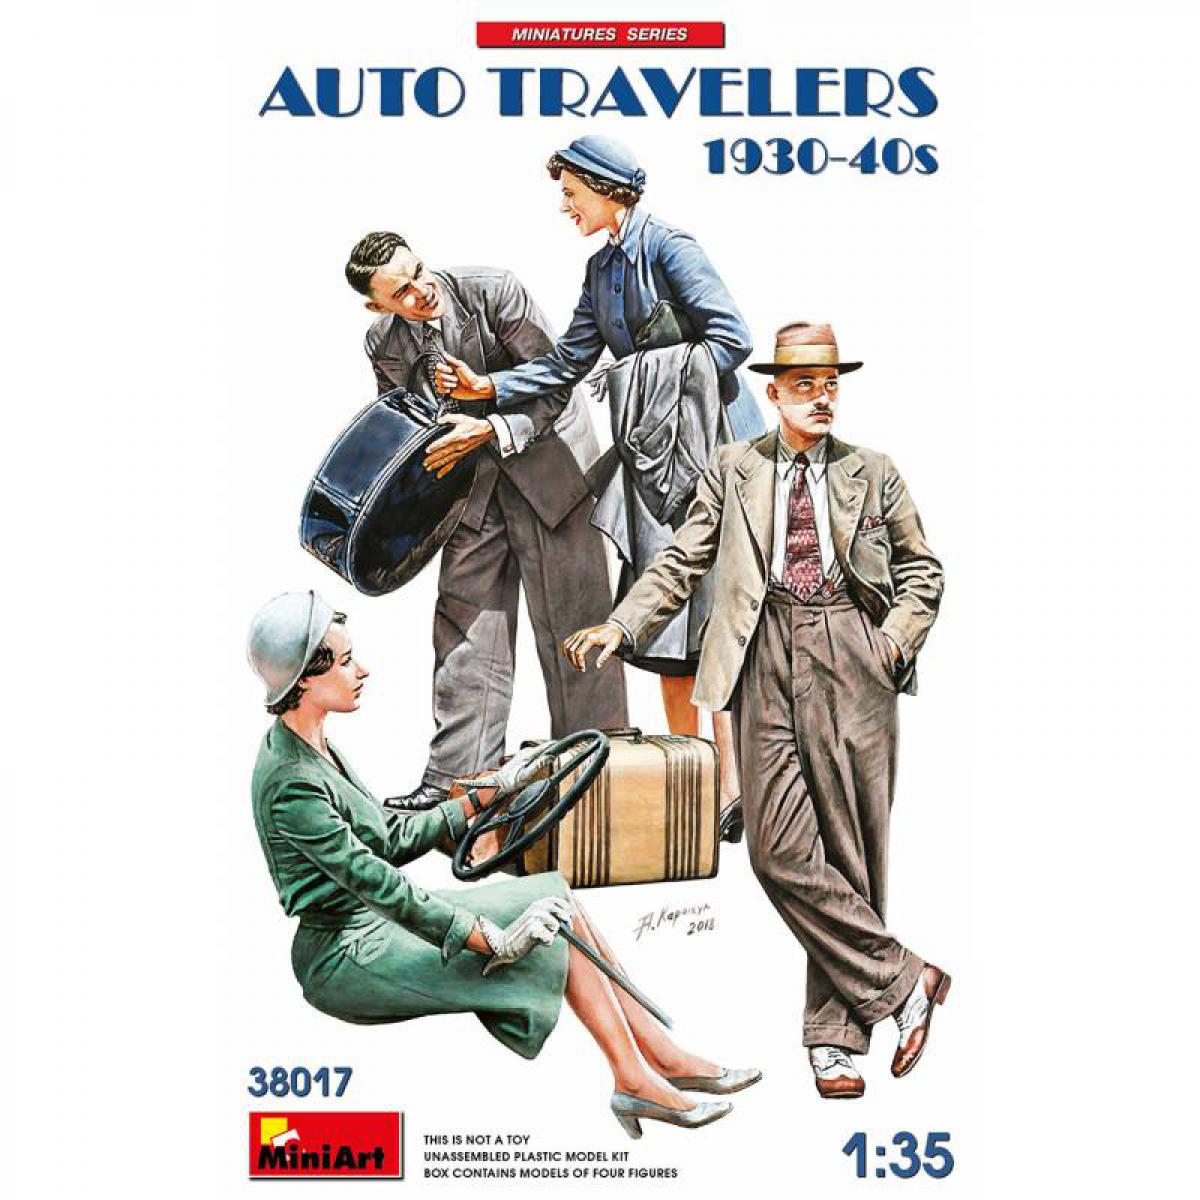 Mini Art - Figurine Mignature Auto Travelers 1930-40s - Figurines militaires